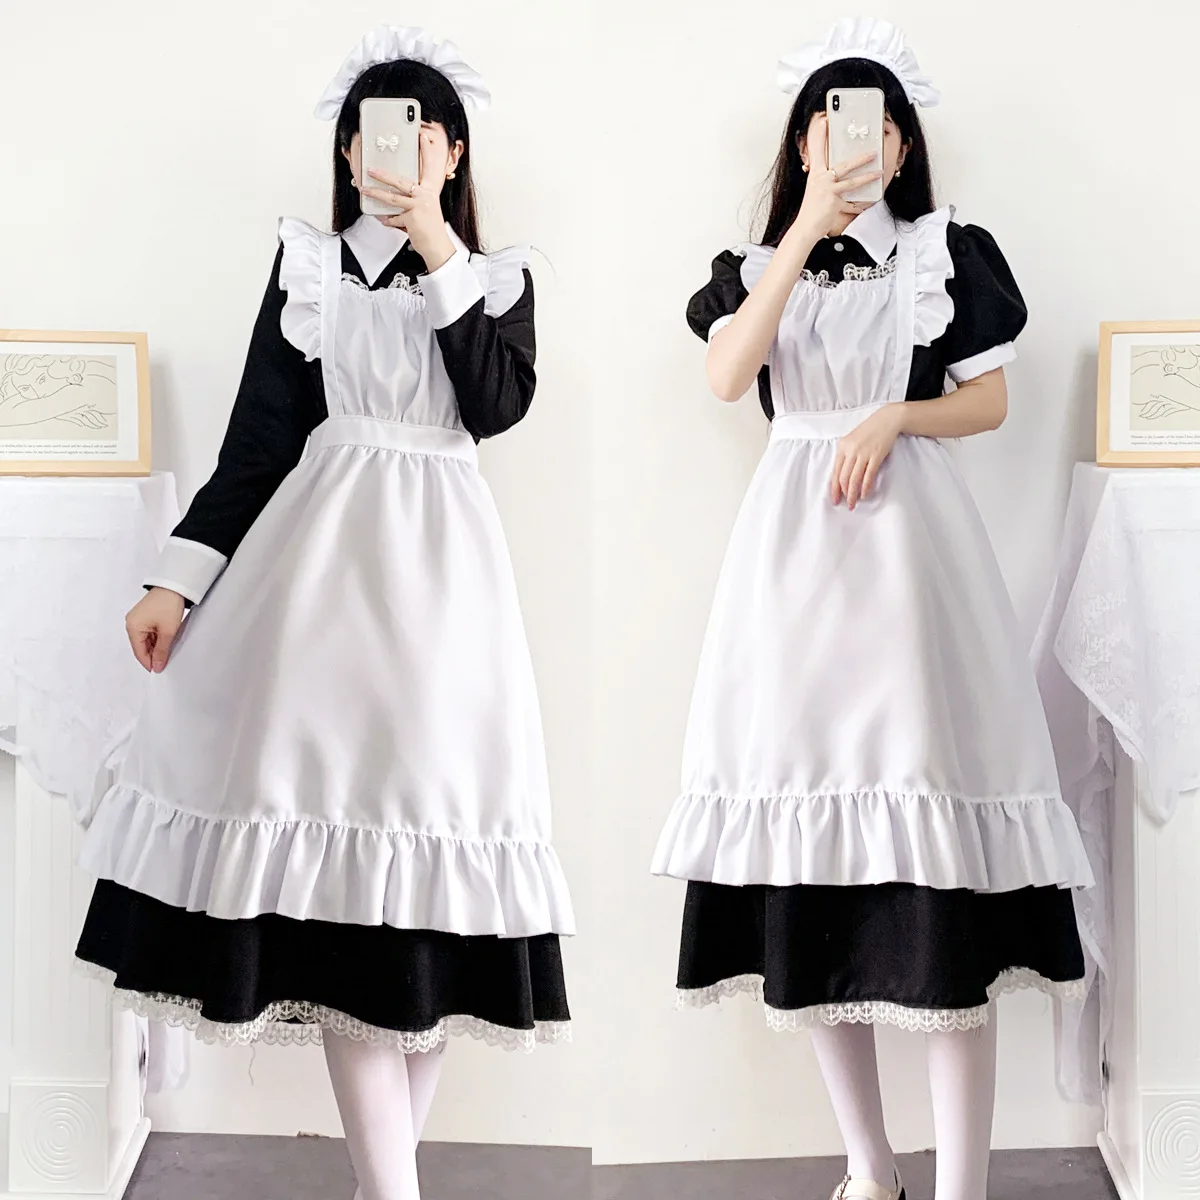 Britânico Lolita Maid Vestido Cosplay Trajes Anime Figura Vestido De  Halloween Trajes Para Mulheres Masculino Terno Role Play Roupas Uniforme -  Trajes De Cosplay - AliExpress